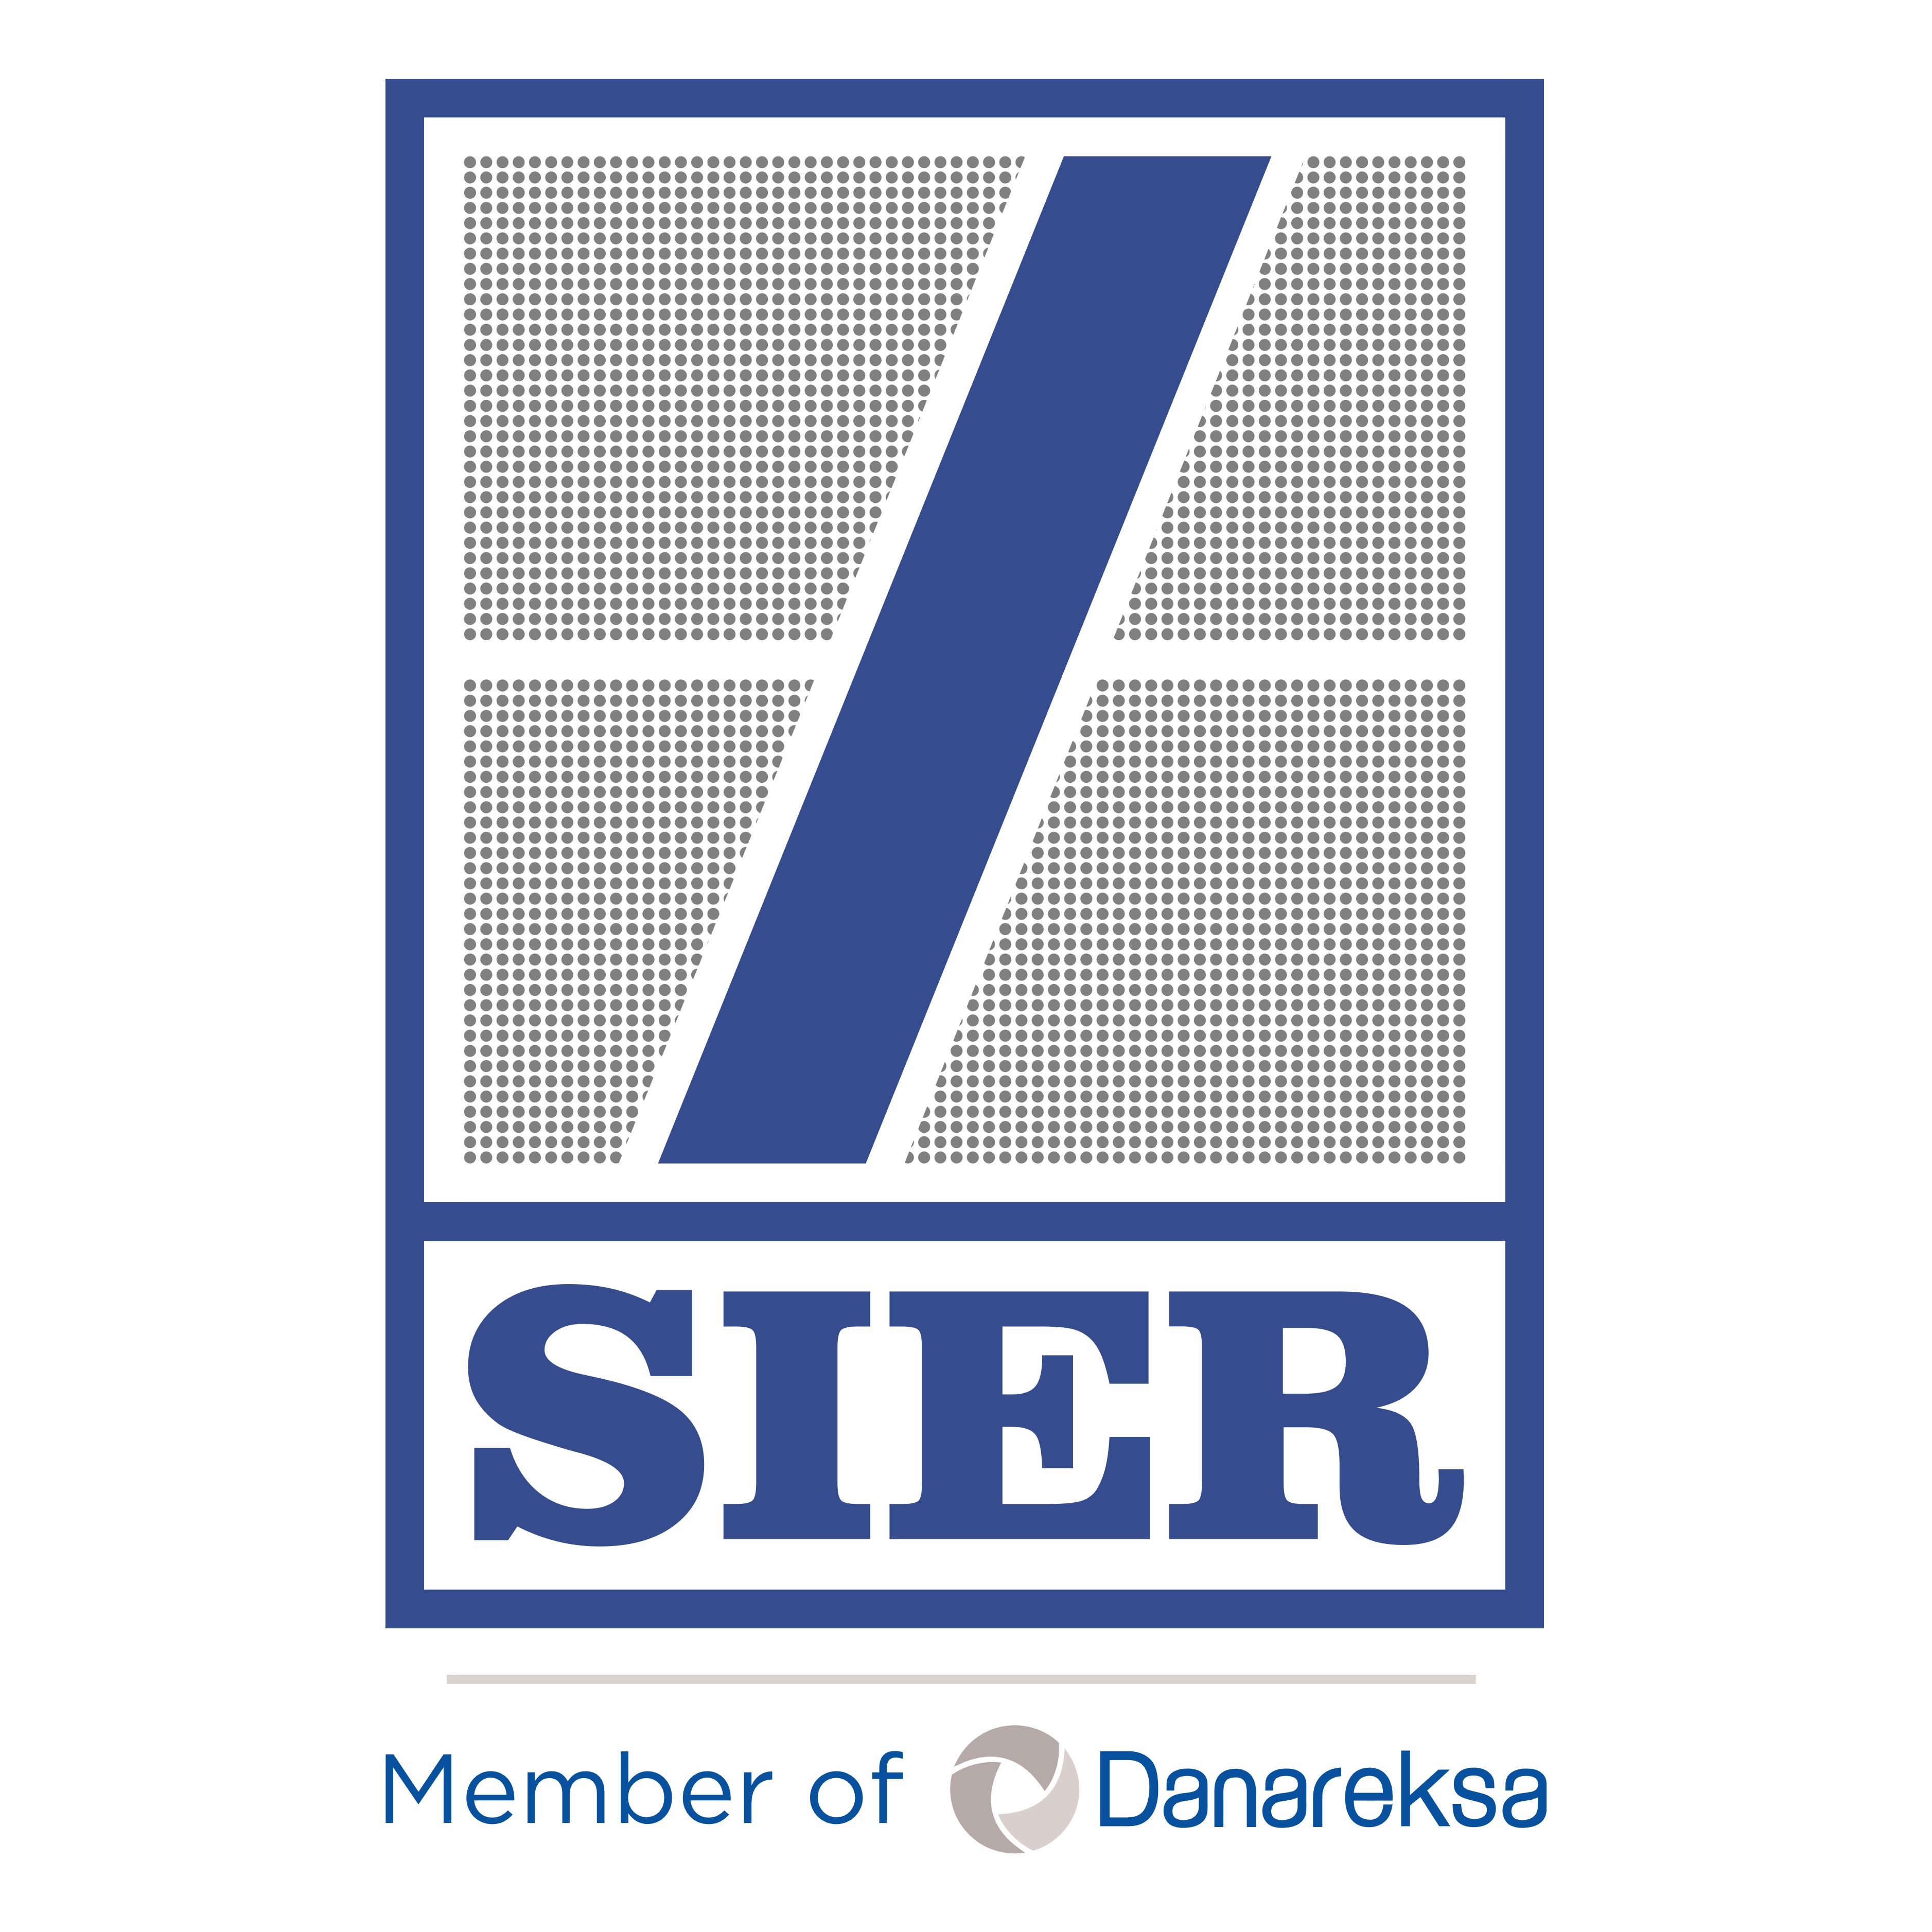 Logo SIER - Member of Danareksa.jpg